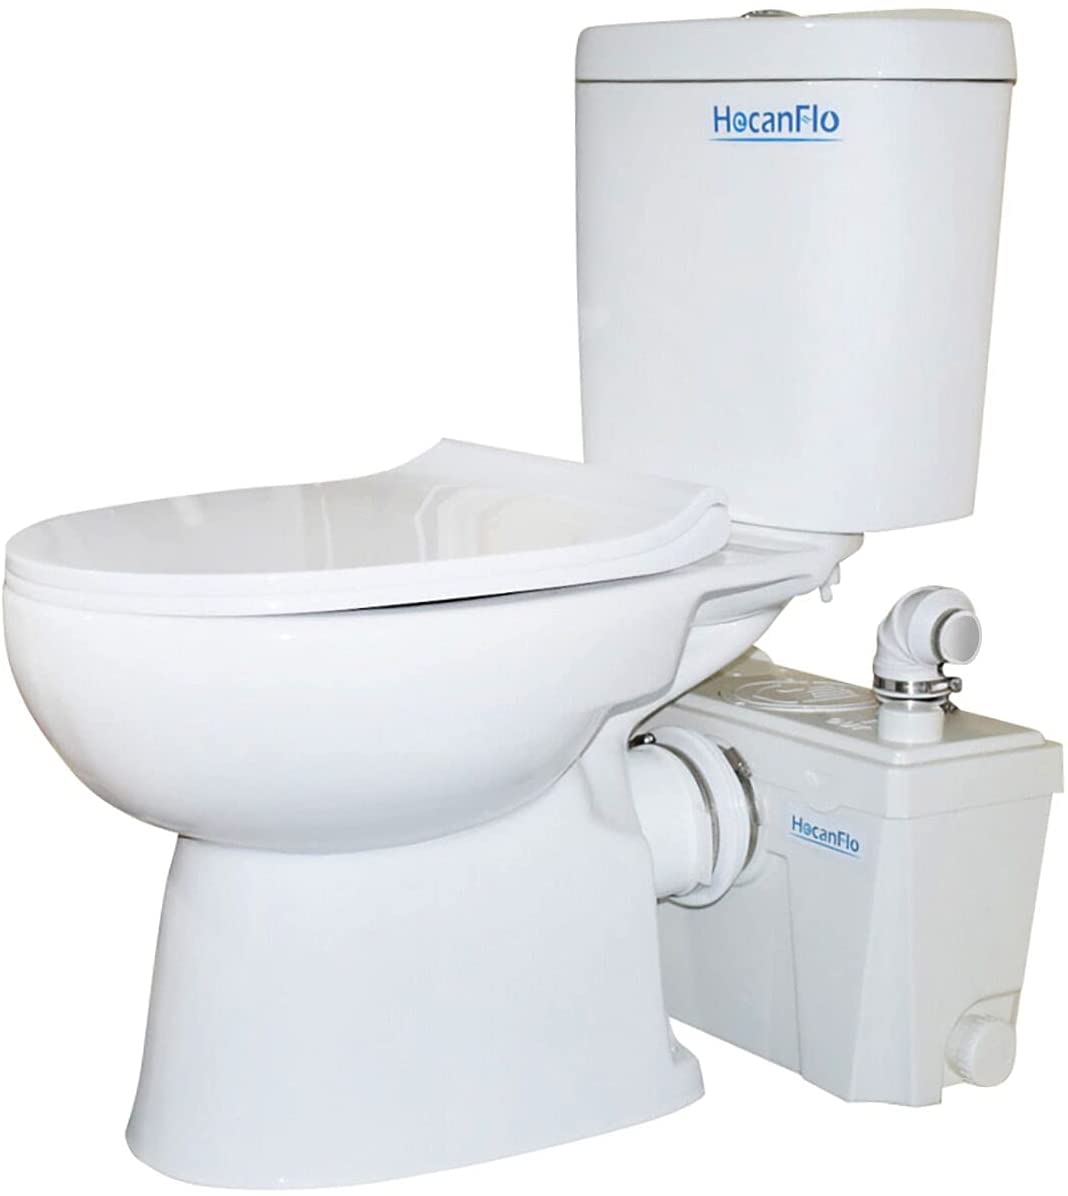 HocanFlo 500-watt Upflush Toilet System